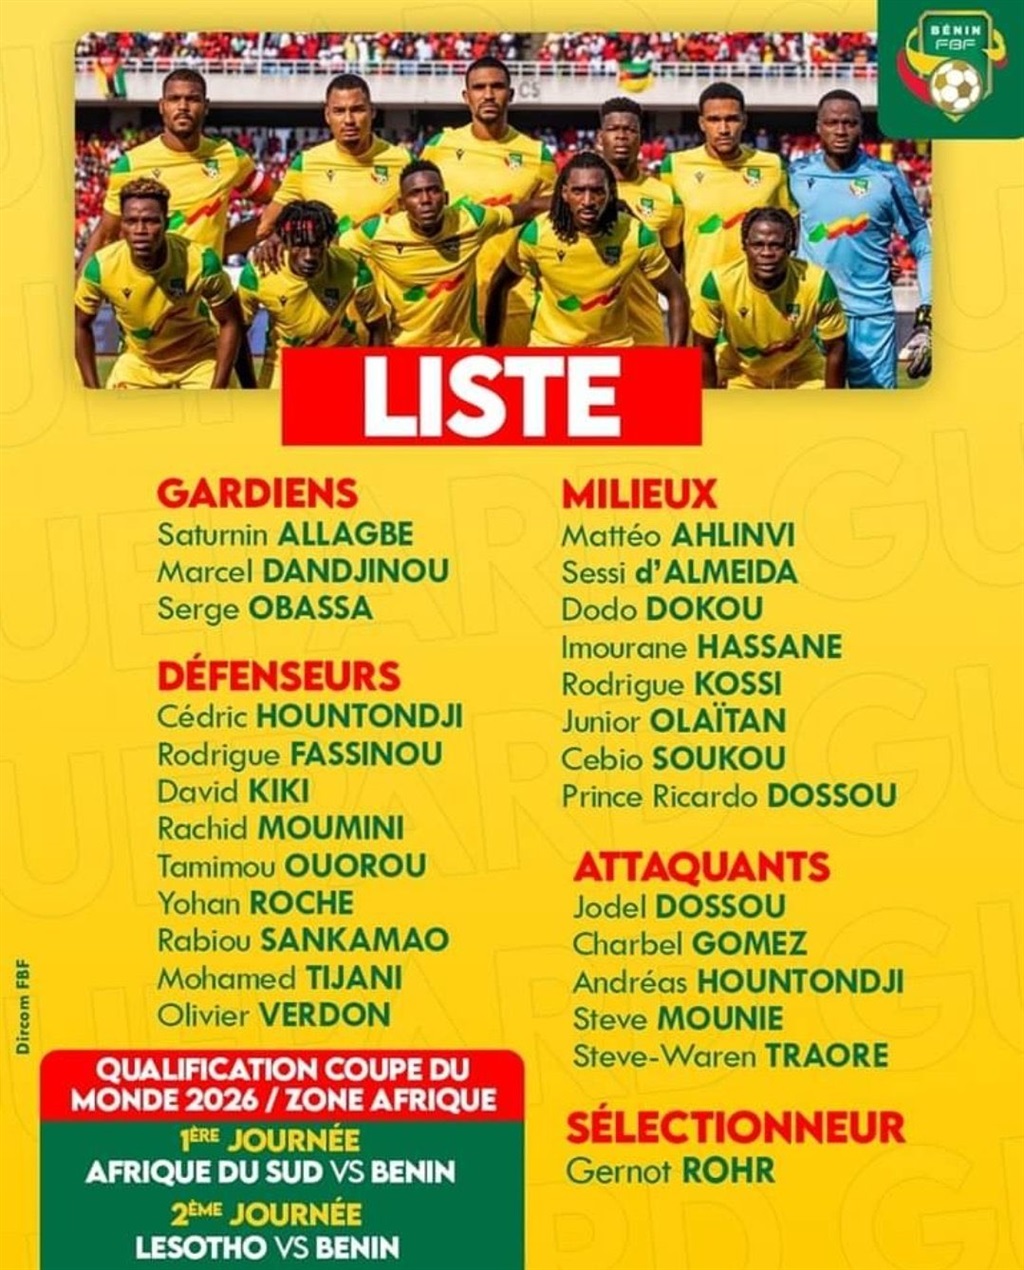 The Benin squad in full